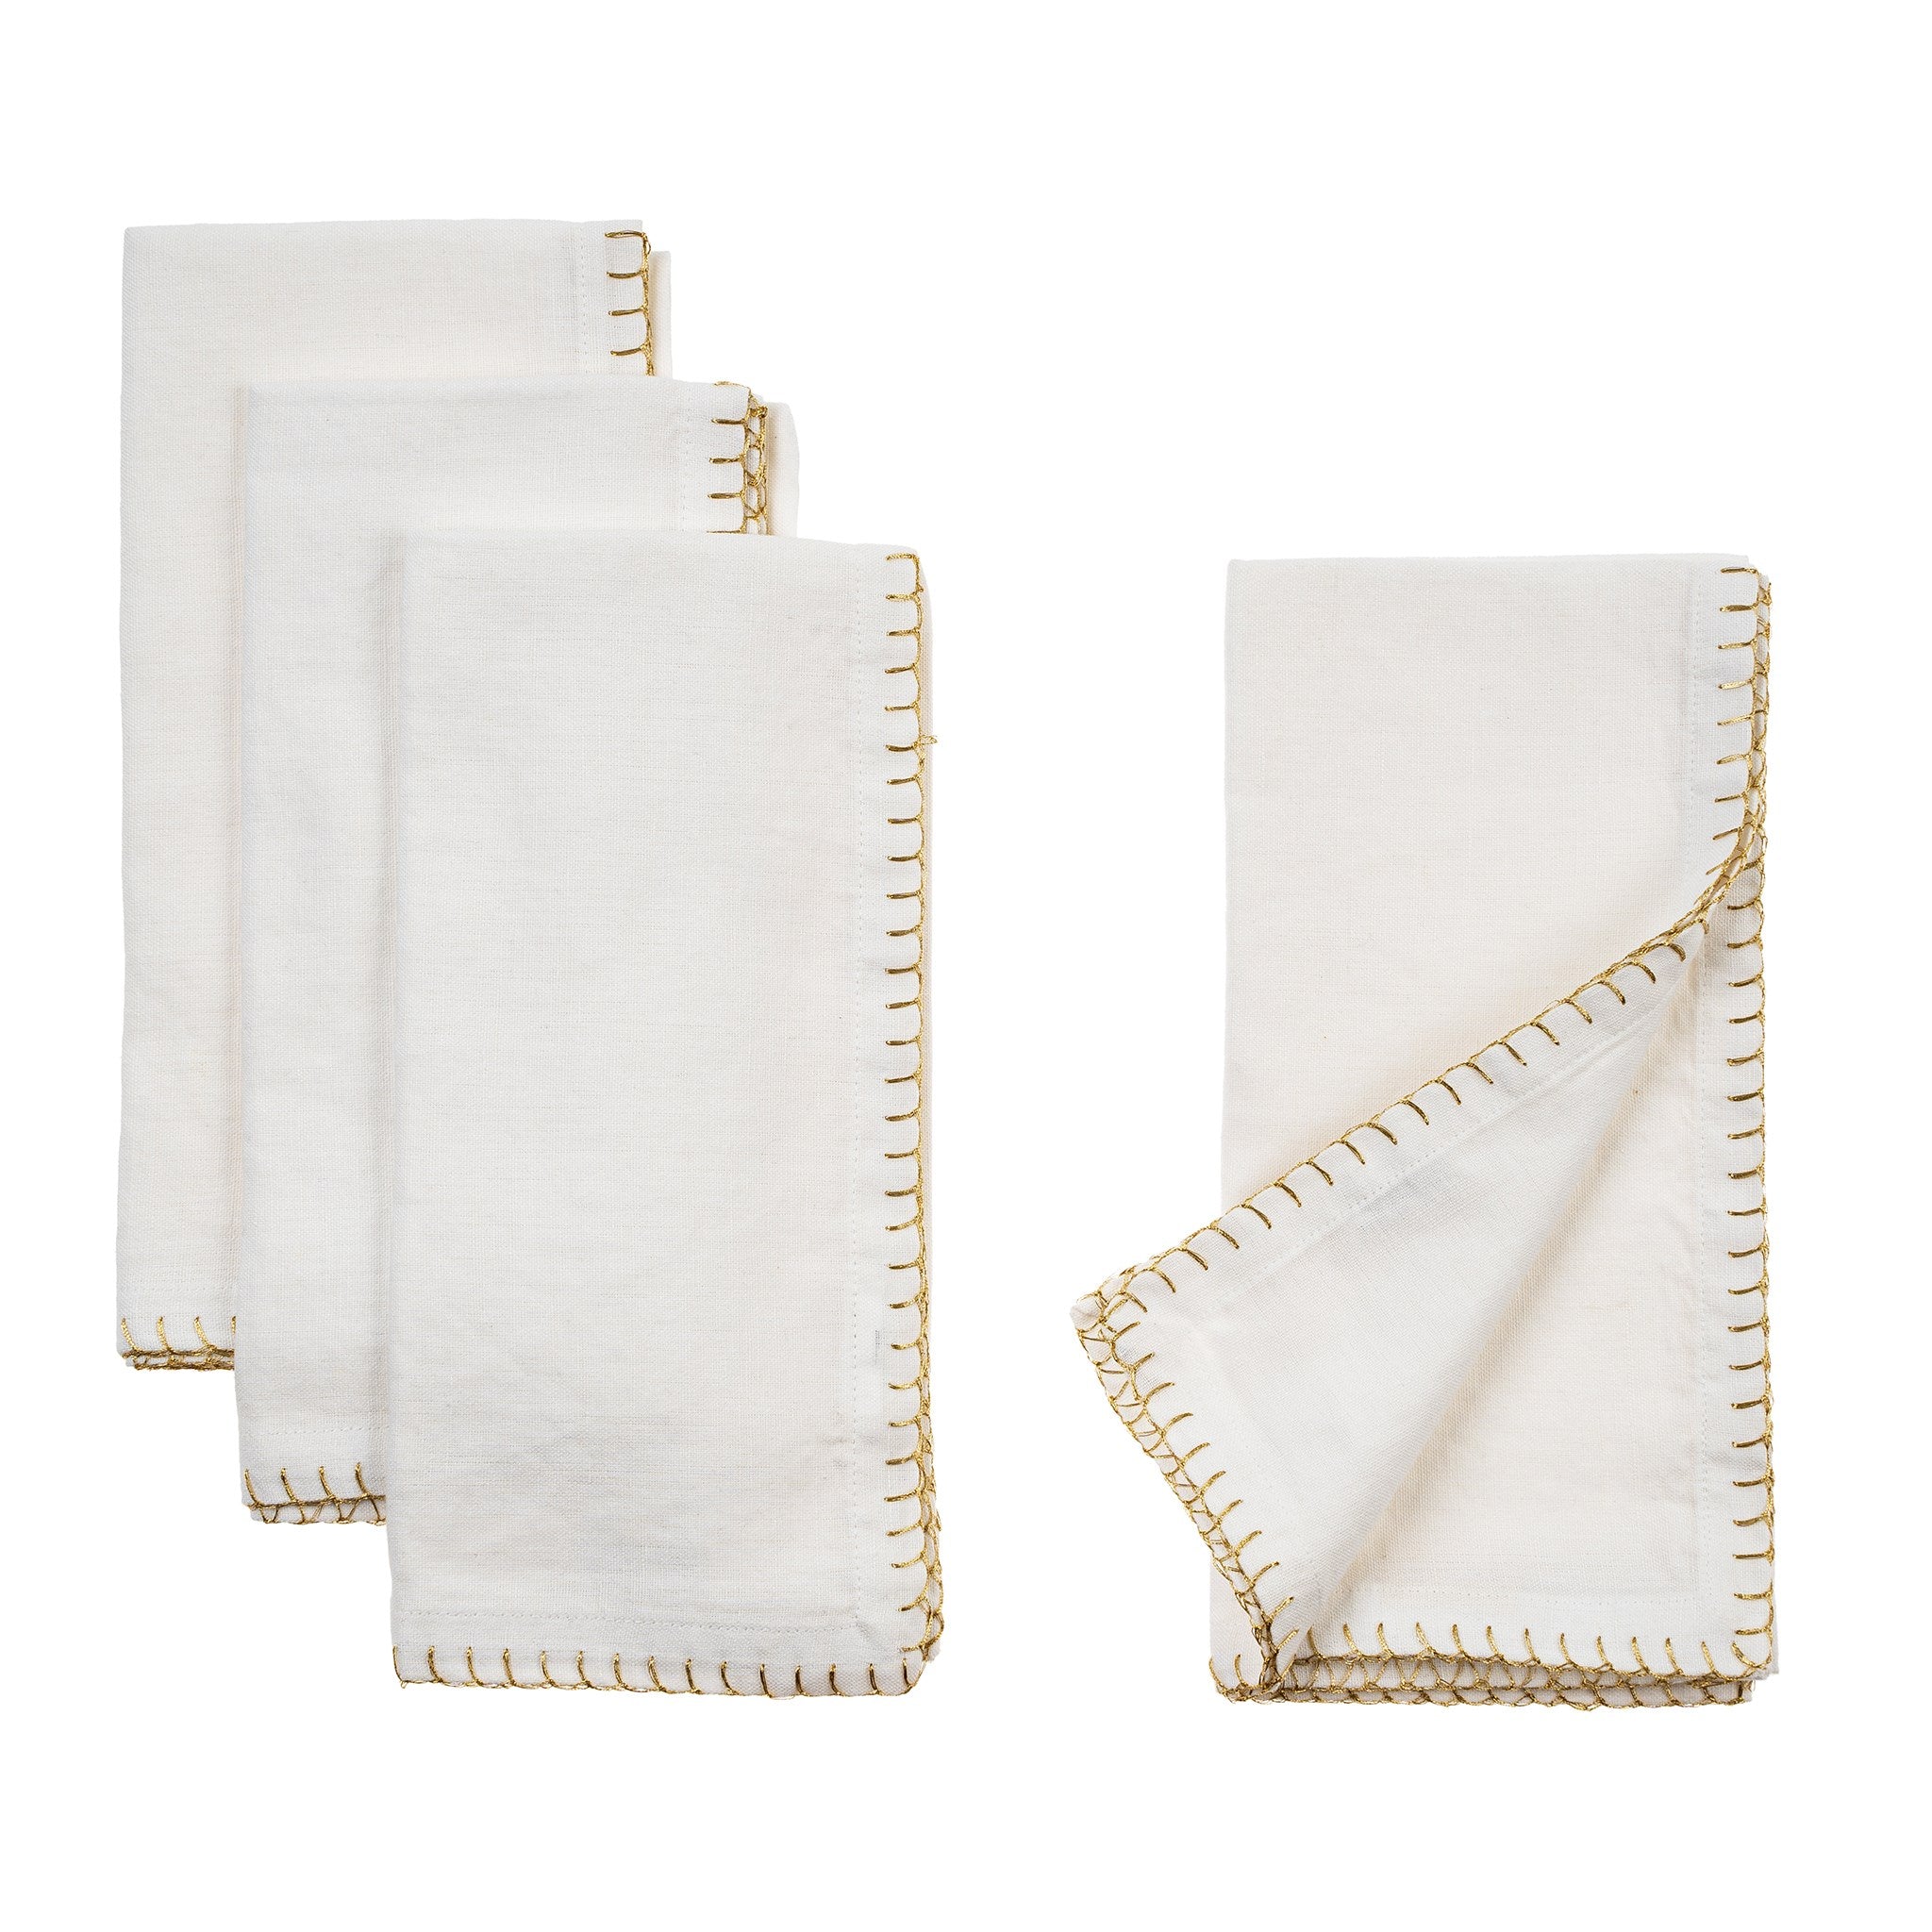 Gold Blanket Stitch Napkin, White , (Set of 4)